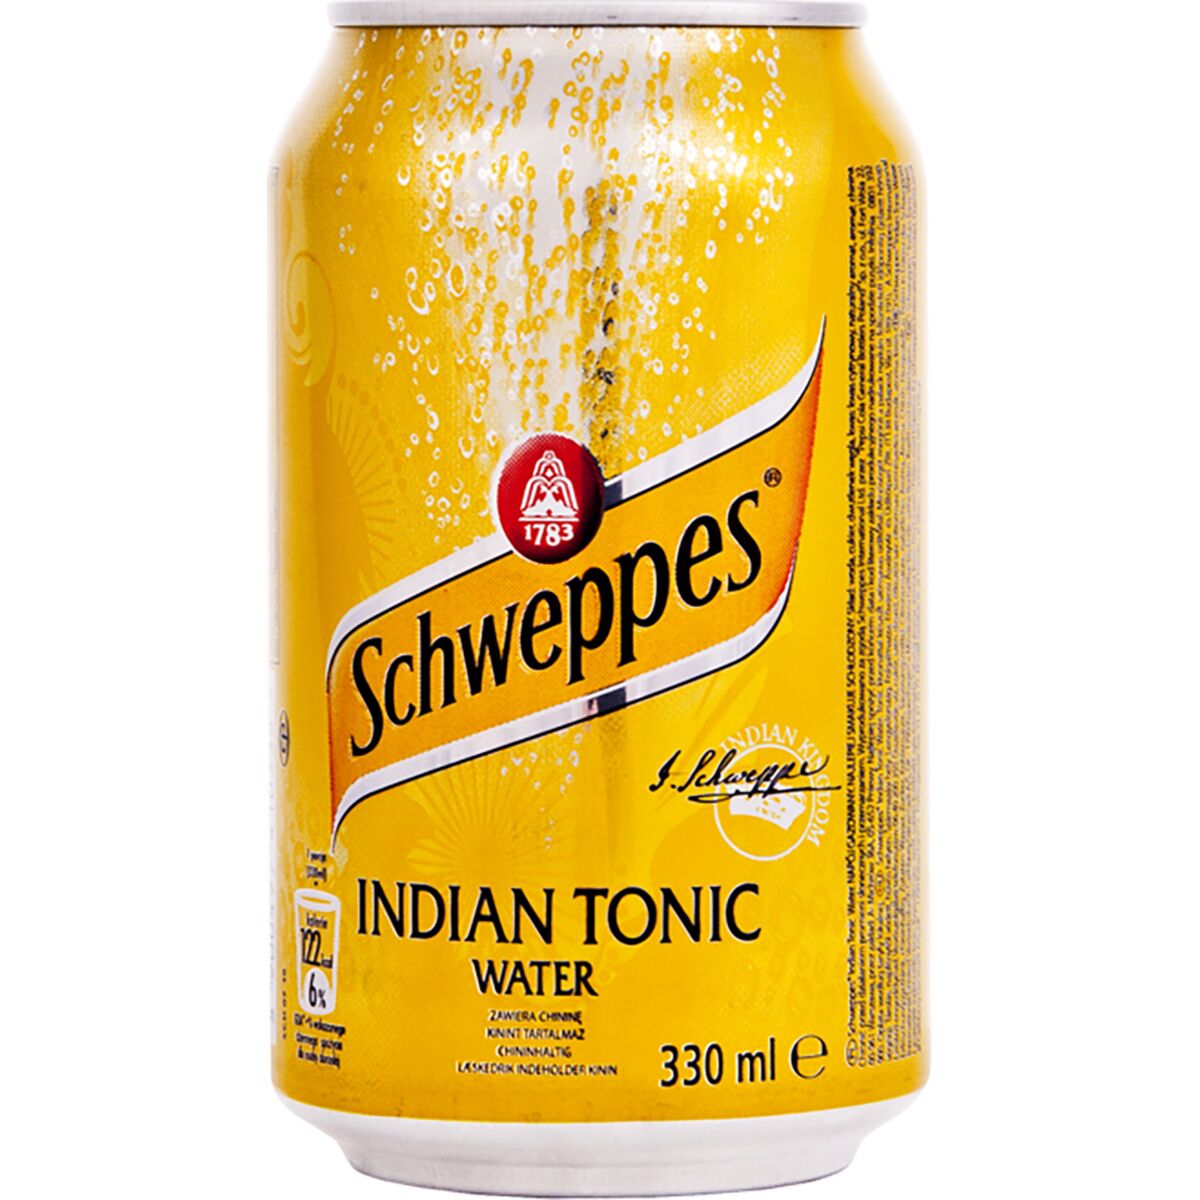 Швепс индиан тоник. Польские напитки. Лимонад из Польши. Tonic indian 0.175.